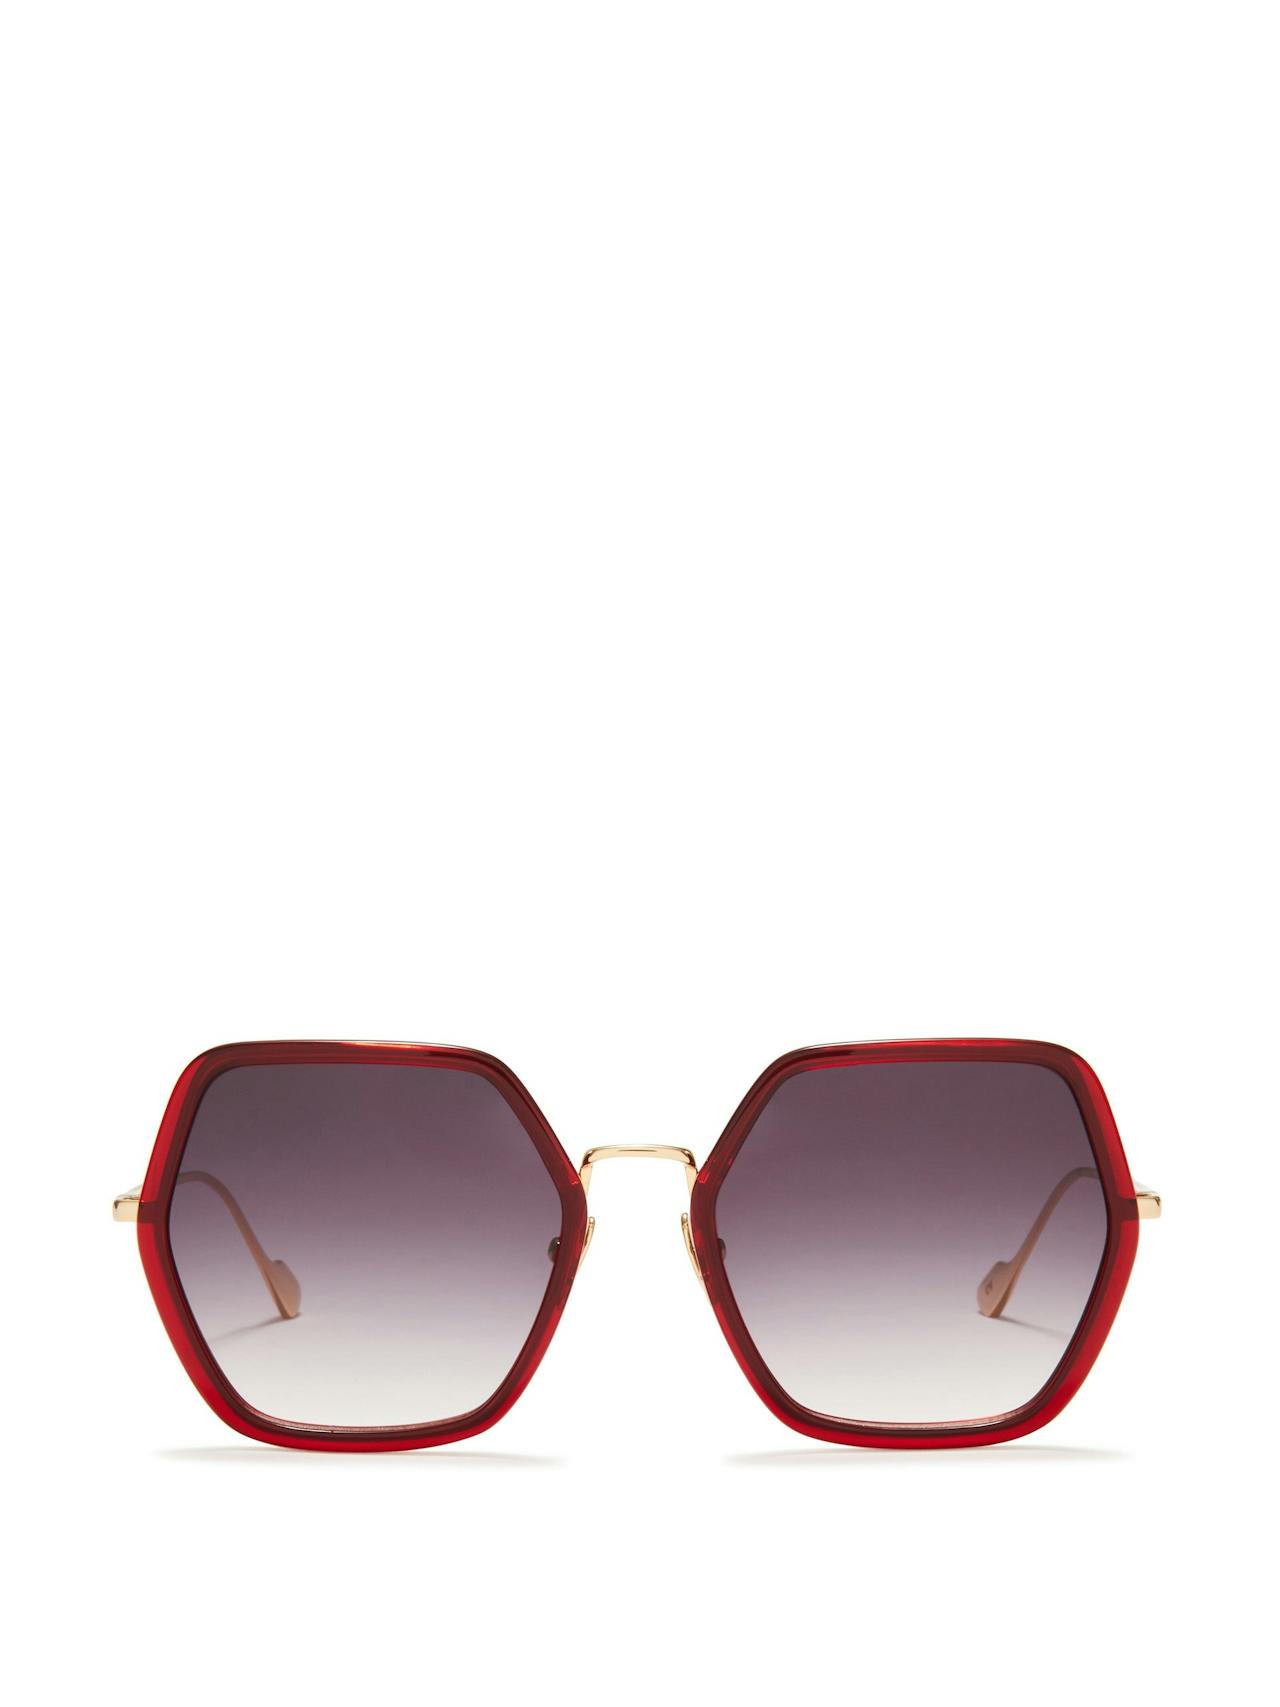 Red Elizabeth sunglasses